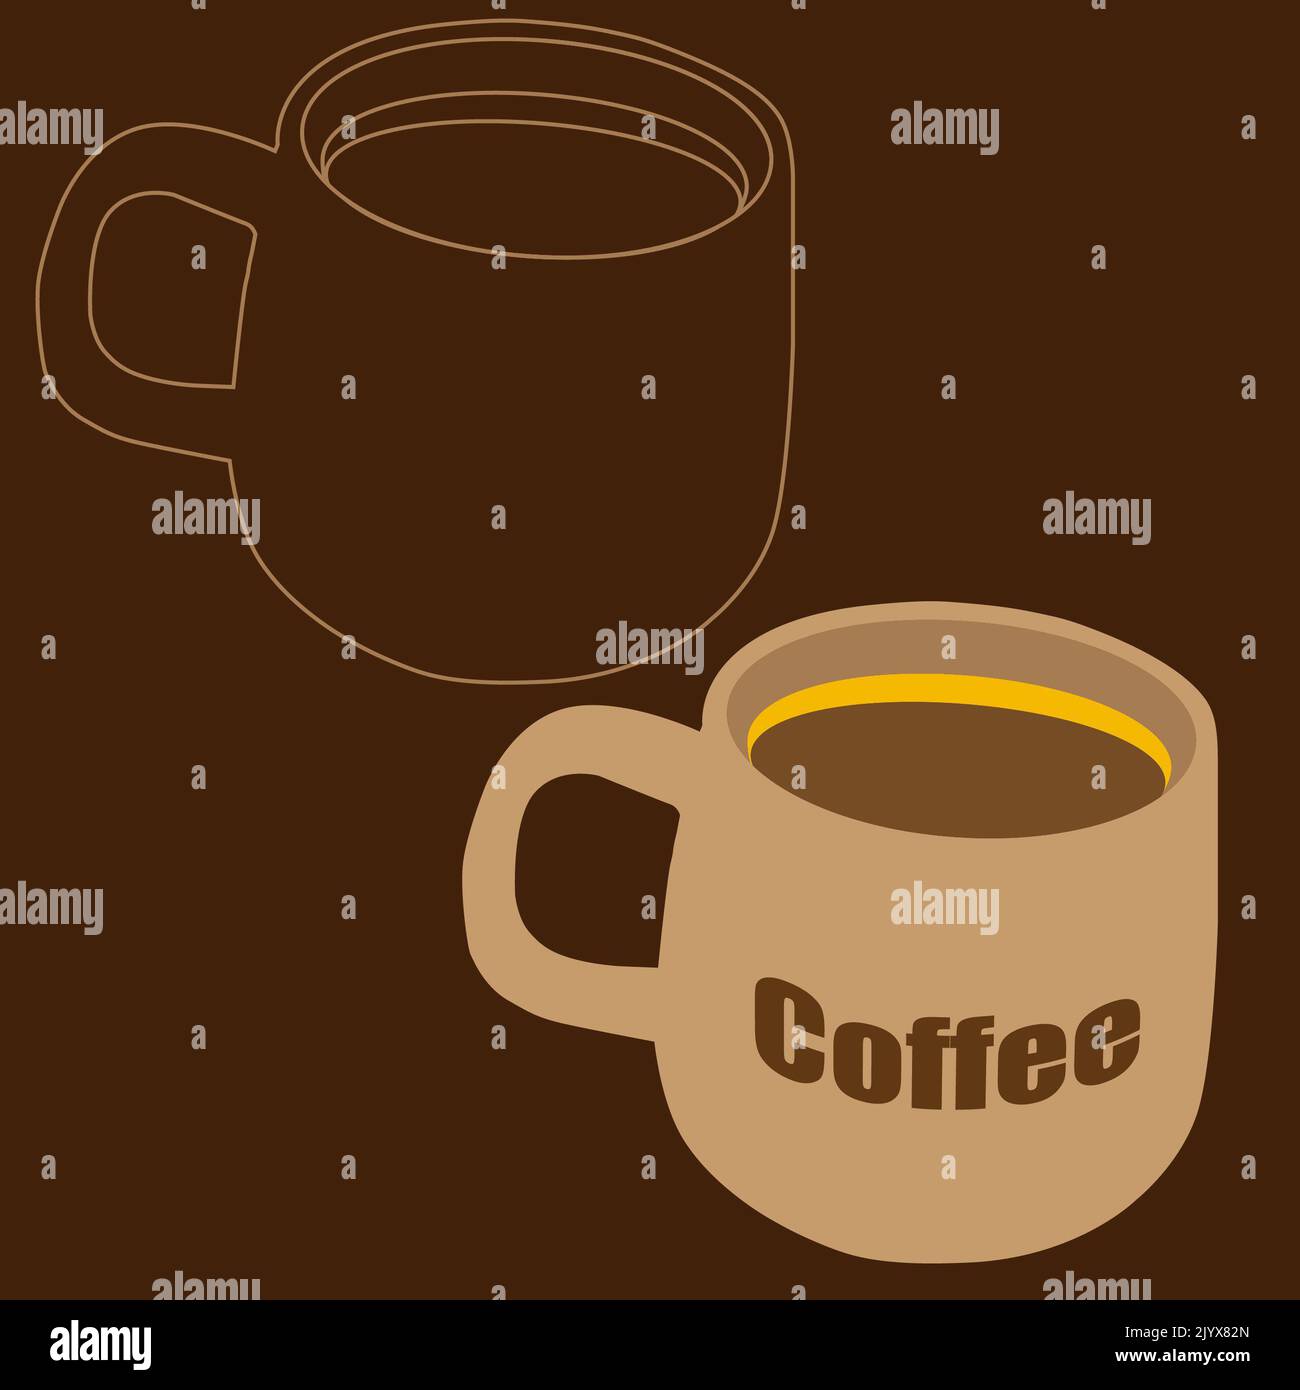 Ilustración de una taza grande llena de café con espuma